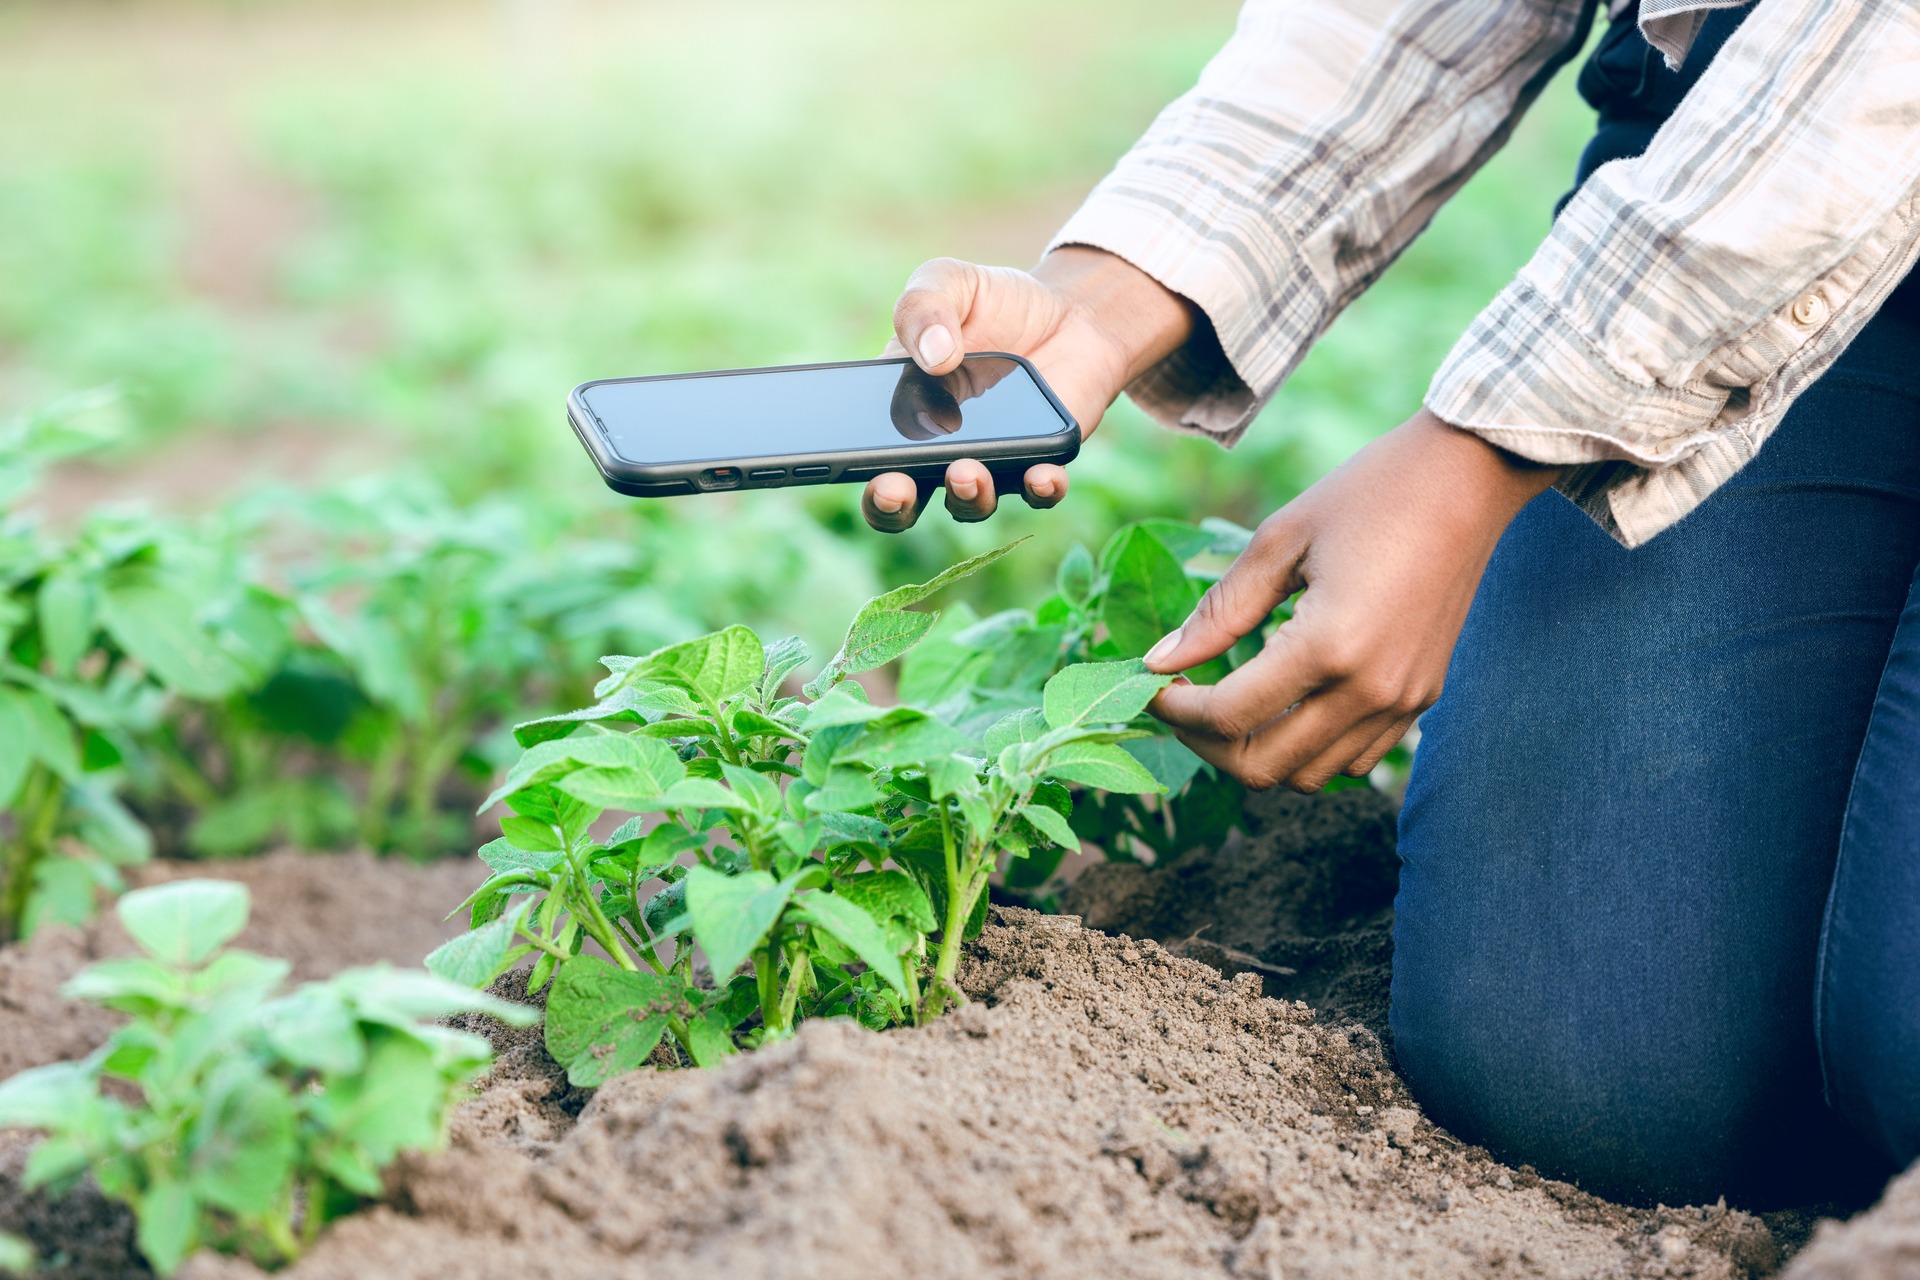 टिकाऊ स्मार्टफोन: मोबाइल फोन का प्रसार और इन प्रौद्योगिकियों तक समान पहुंच वास्तव में संयुक्त राष्ट्र संगठन द्वारा स्थापित सतत विकास लक्ष्यों को प्राप्त करने के करीब पहुंचने के लिए एक शक्तिशाली उपकरण हो सकता है।